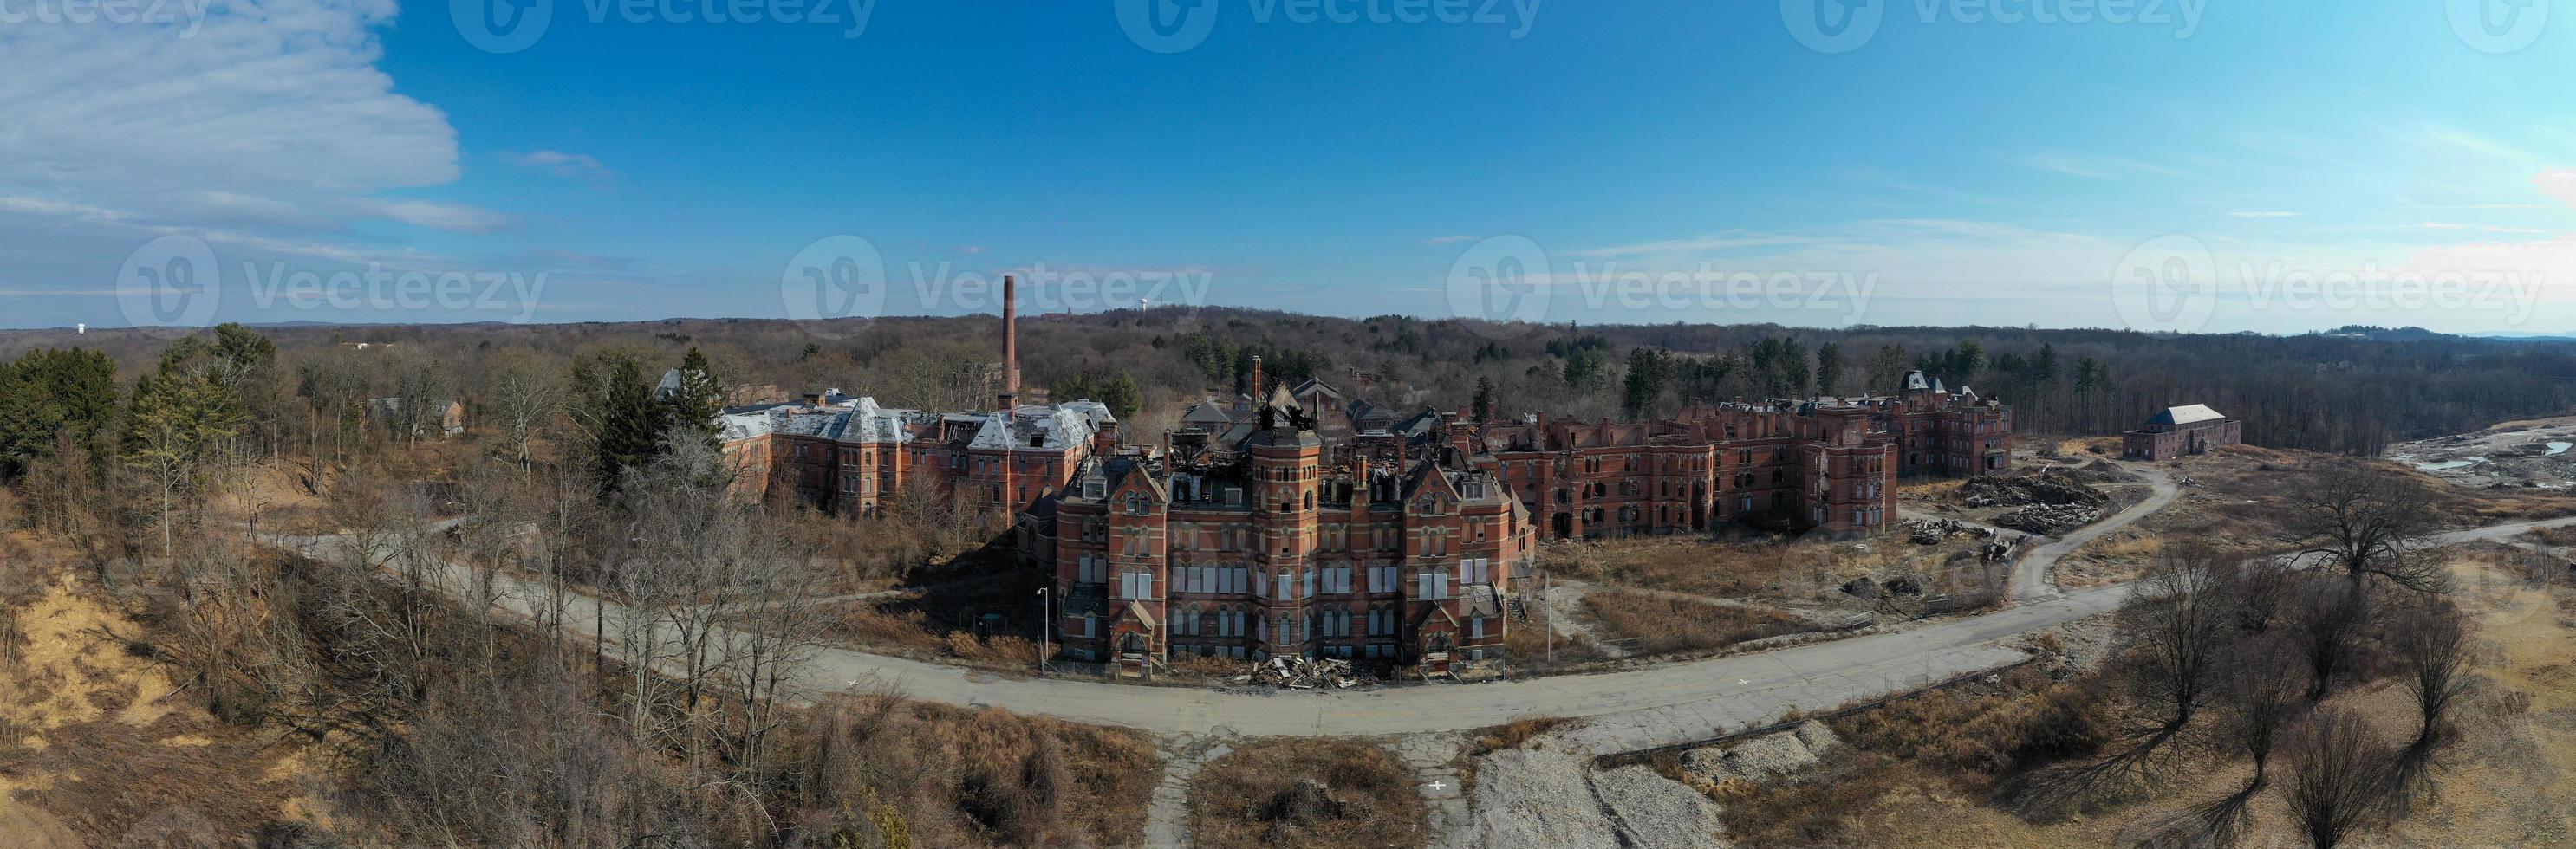 o hospital estadual do rio hudson é um antigo hospital psiquiátrico do estado de nova york que funcionou de 1873 até seu fechamento no início dos anos 2000. foto